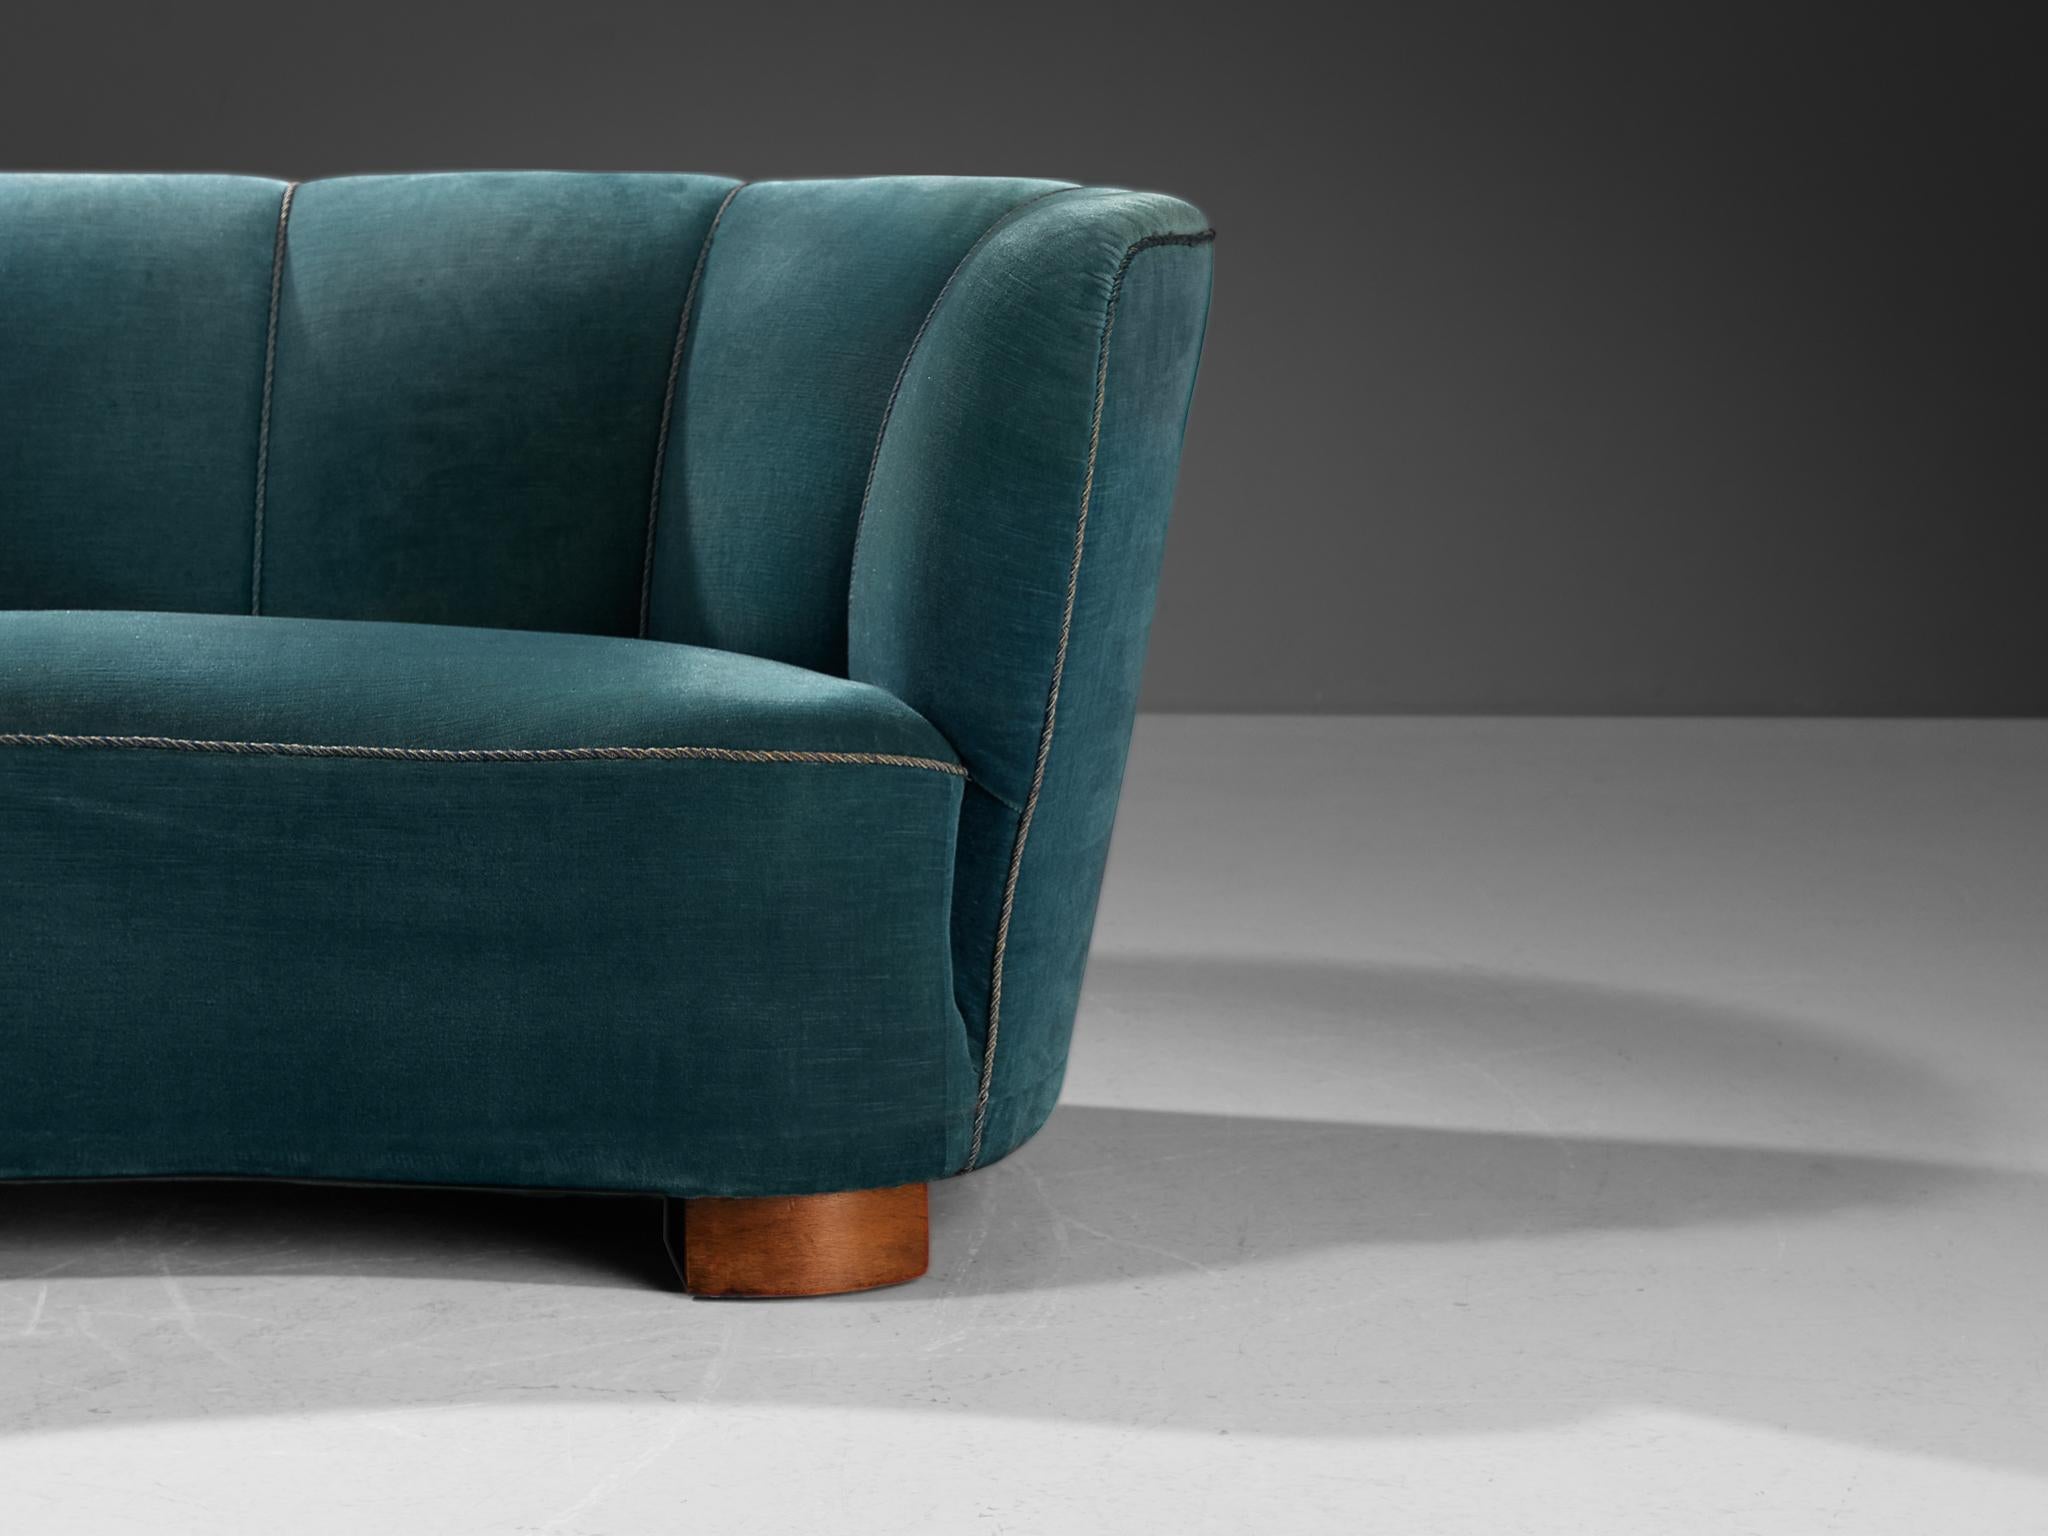 Mid-20th Century Danish Banana Sofa in Blue Velvet Upholstery For Sale